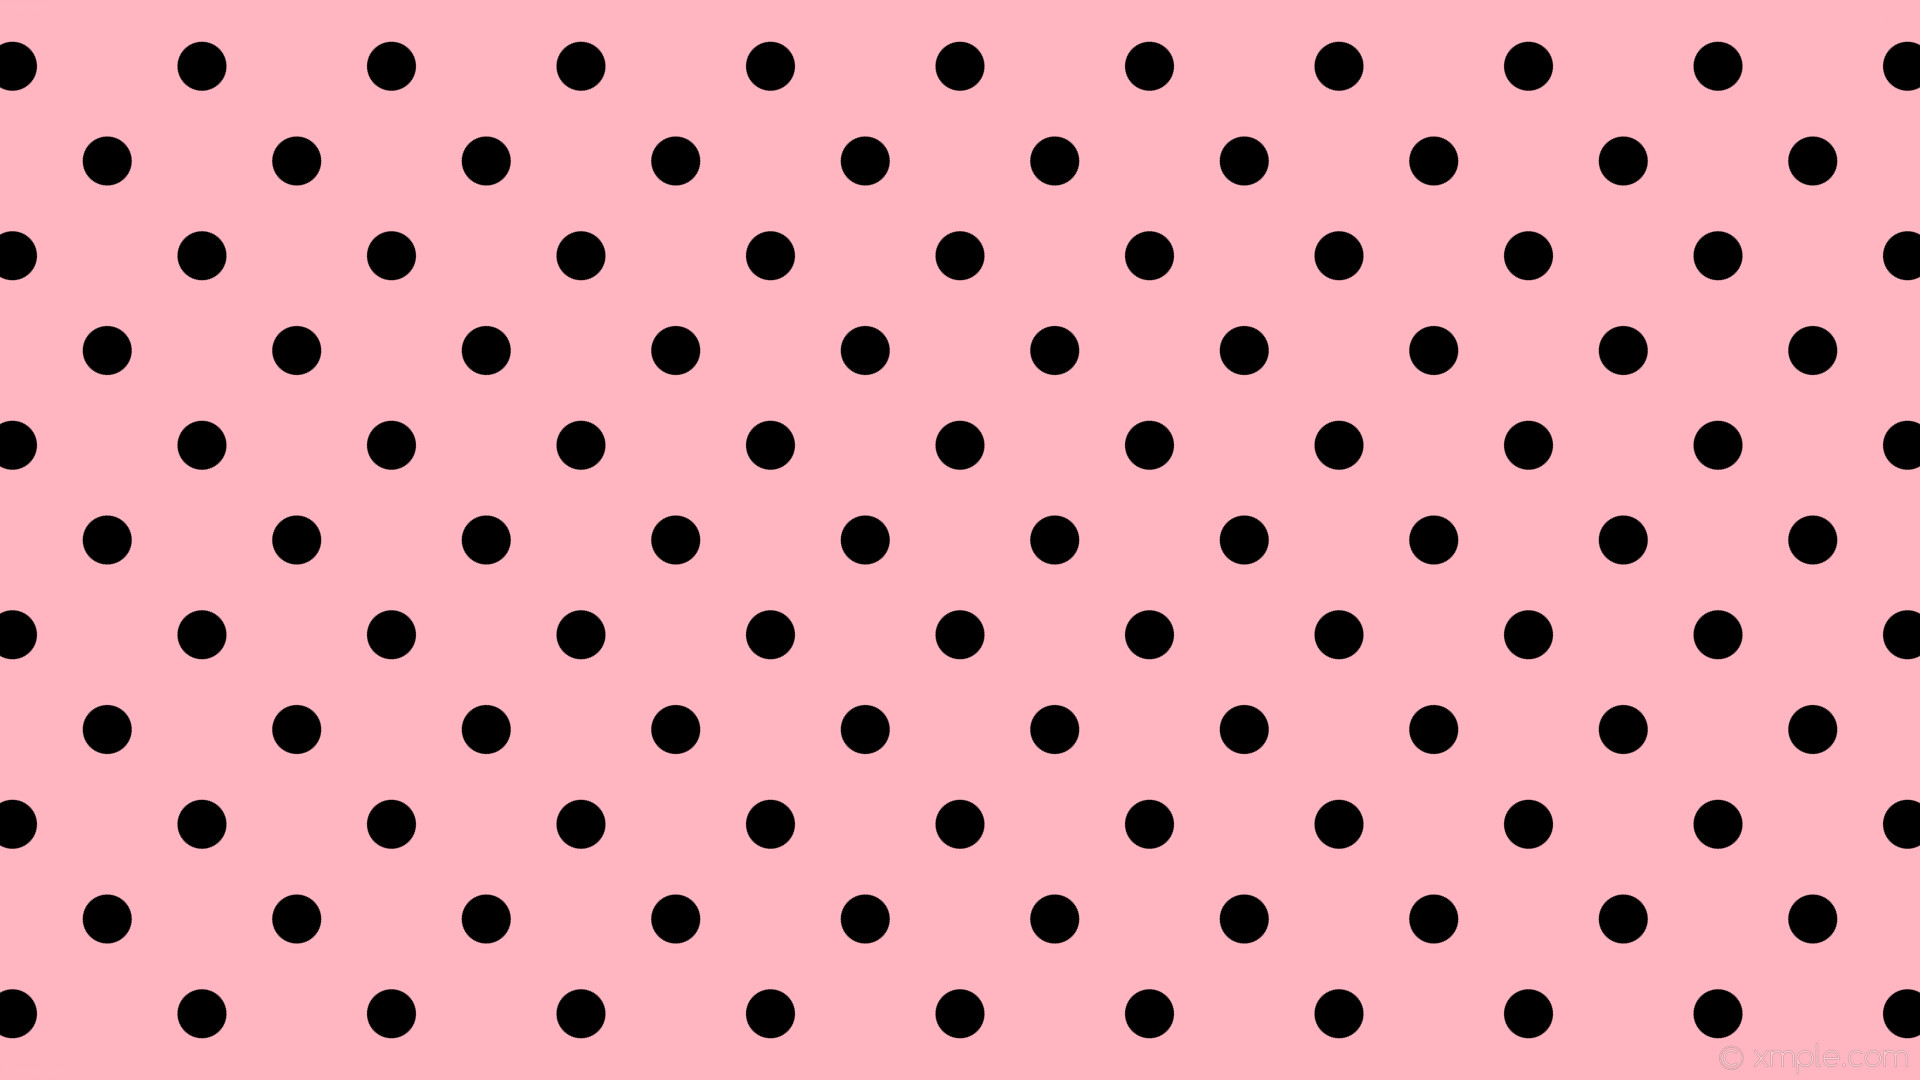 1920x1080 wallpaper pink polka dots black spots light pink #ffb6c1 #000000 225Â° 49px  134px